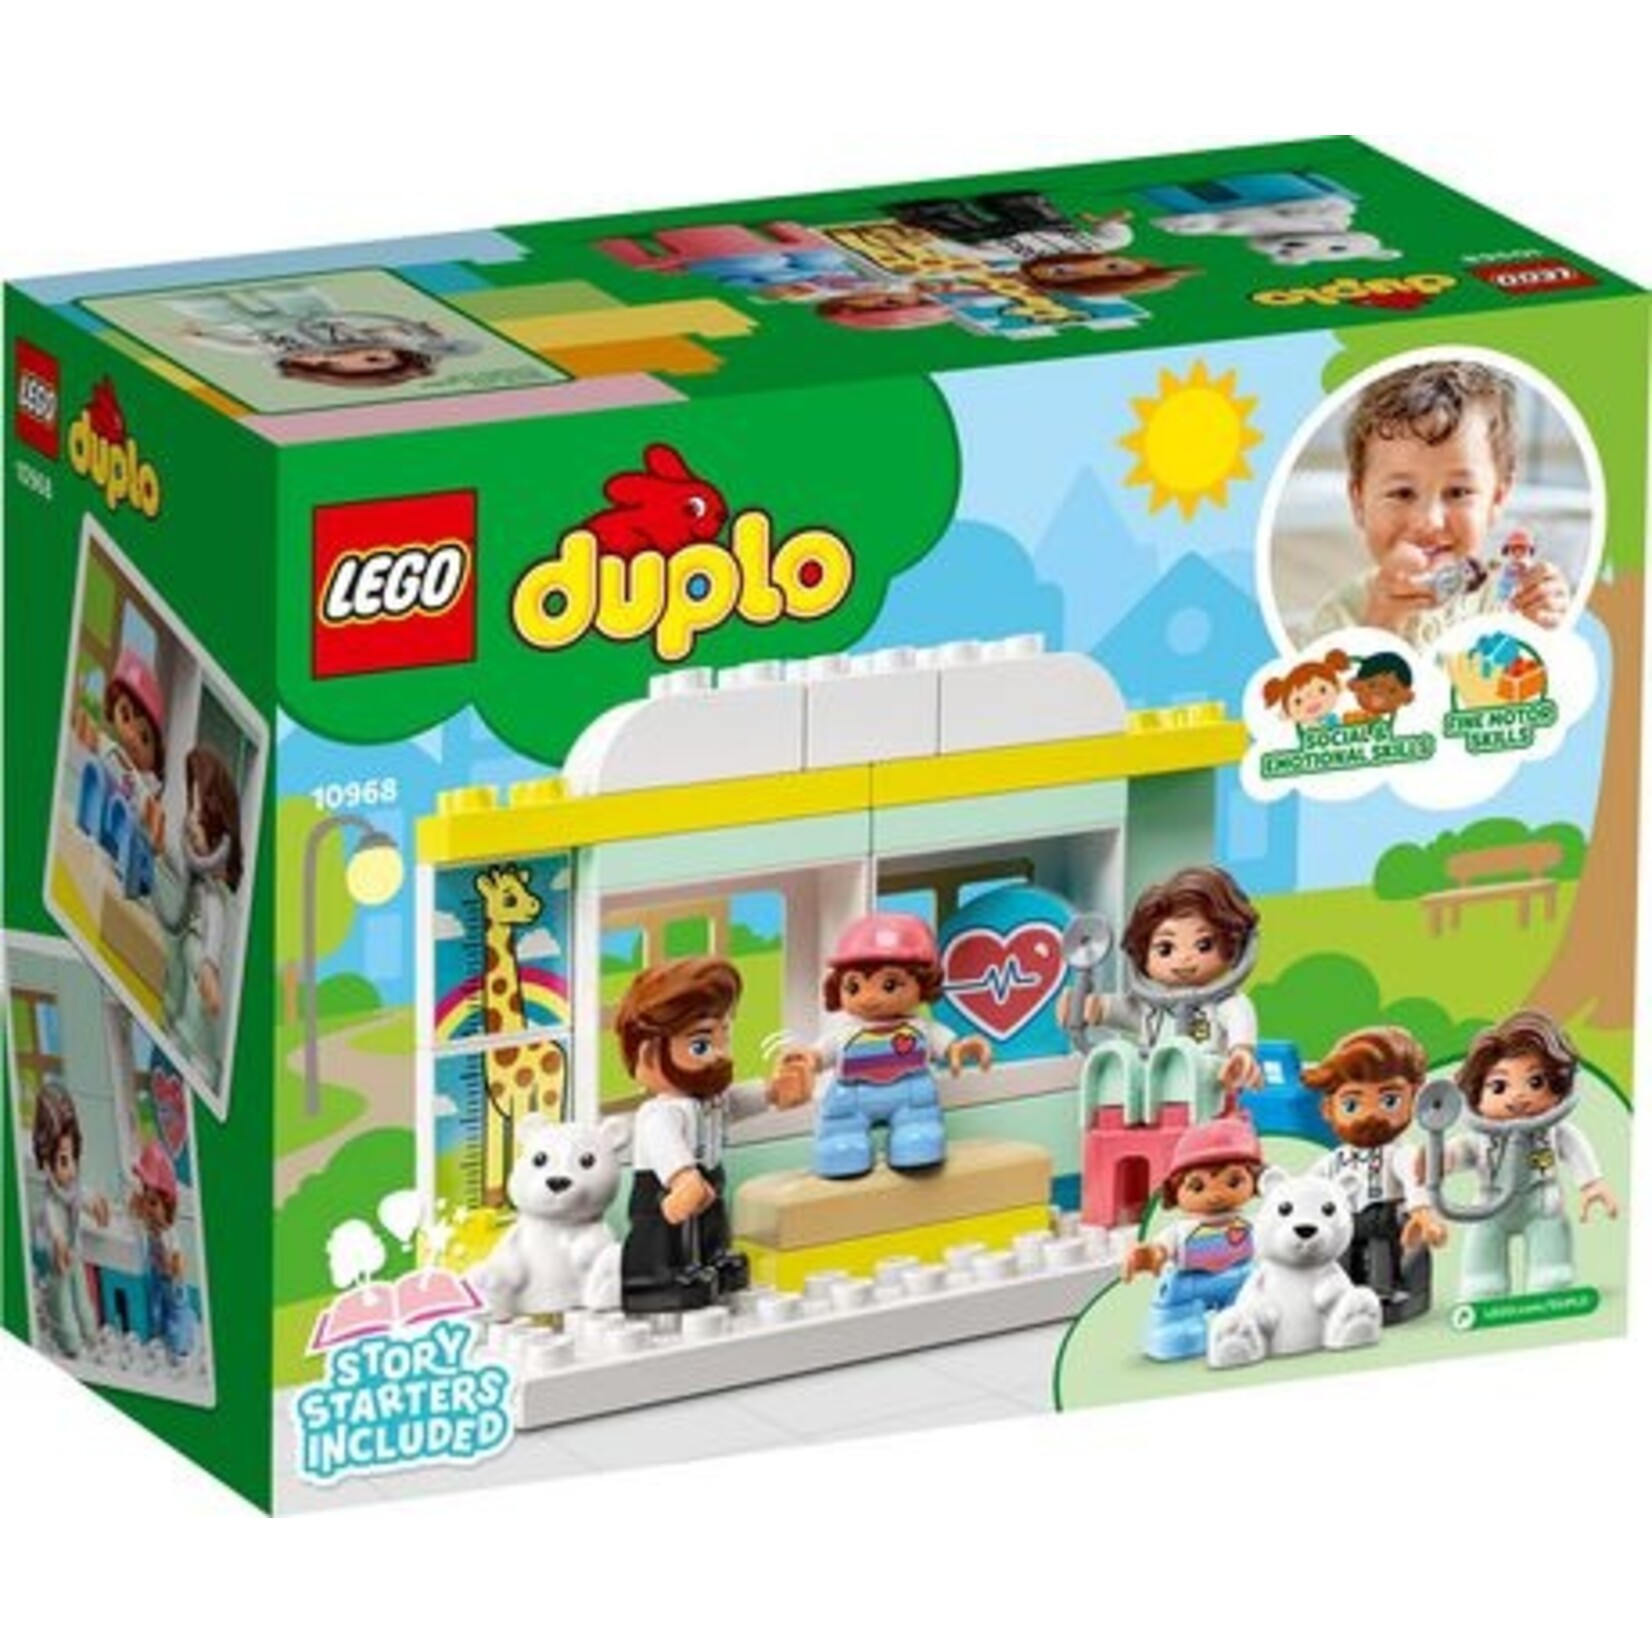 LEGO Duplo - doctor visit